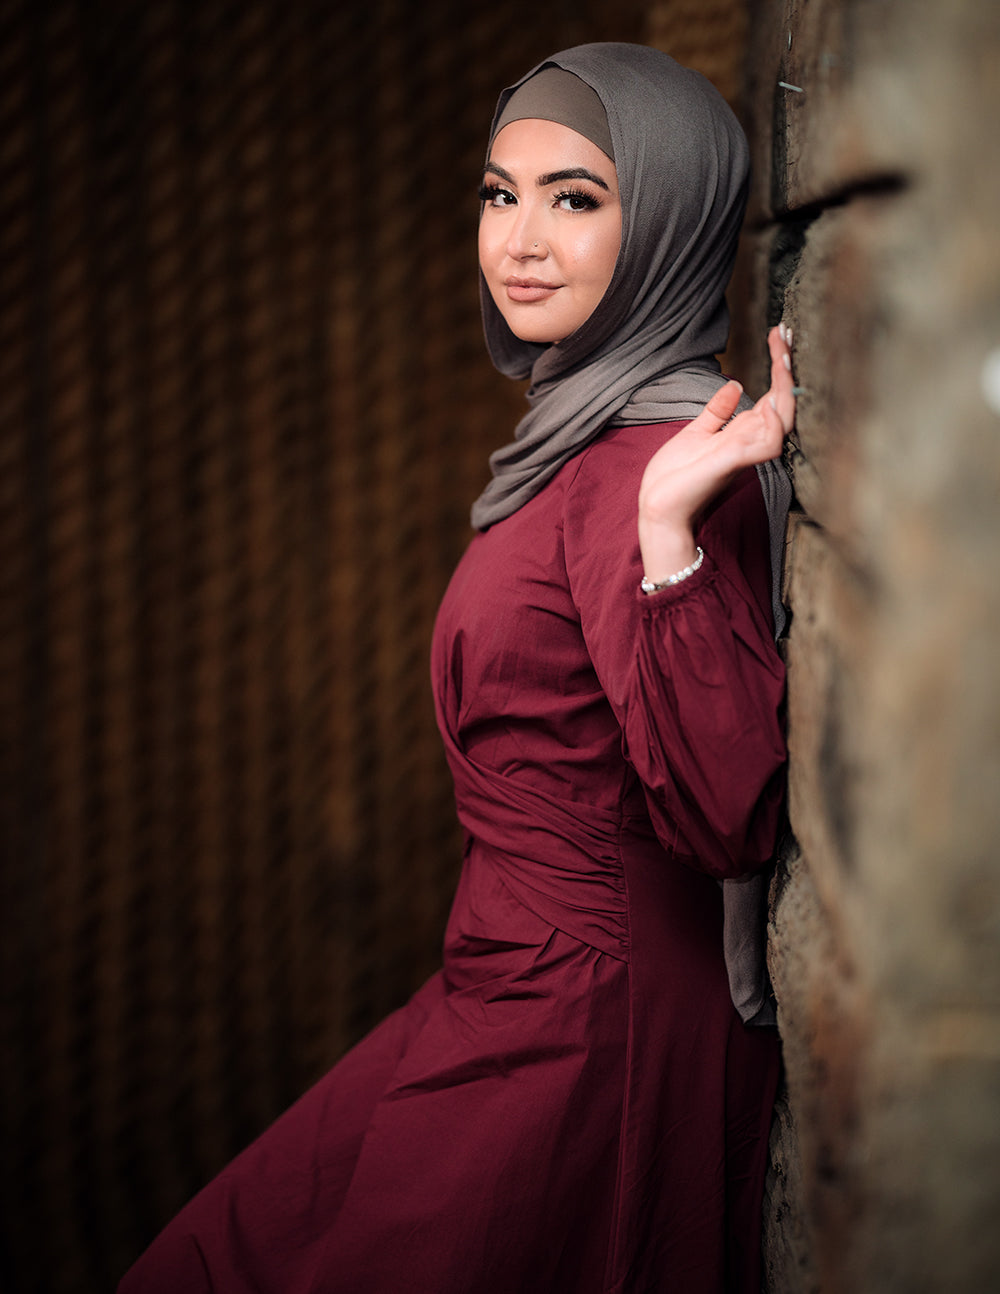 M7928Burgundy-dress-abaya